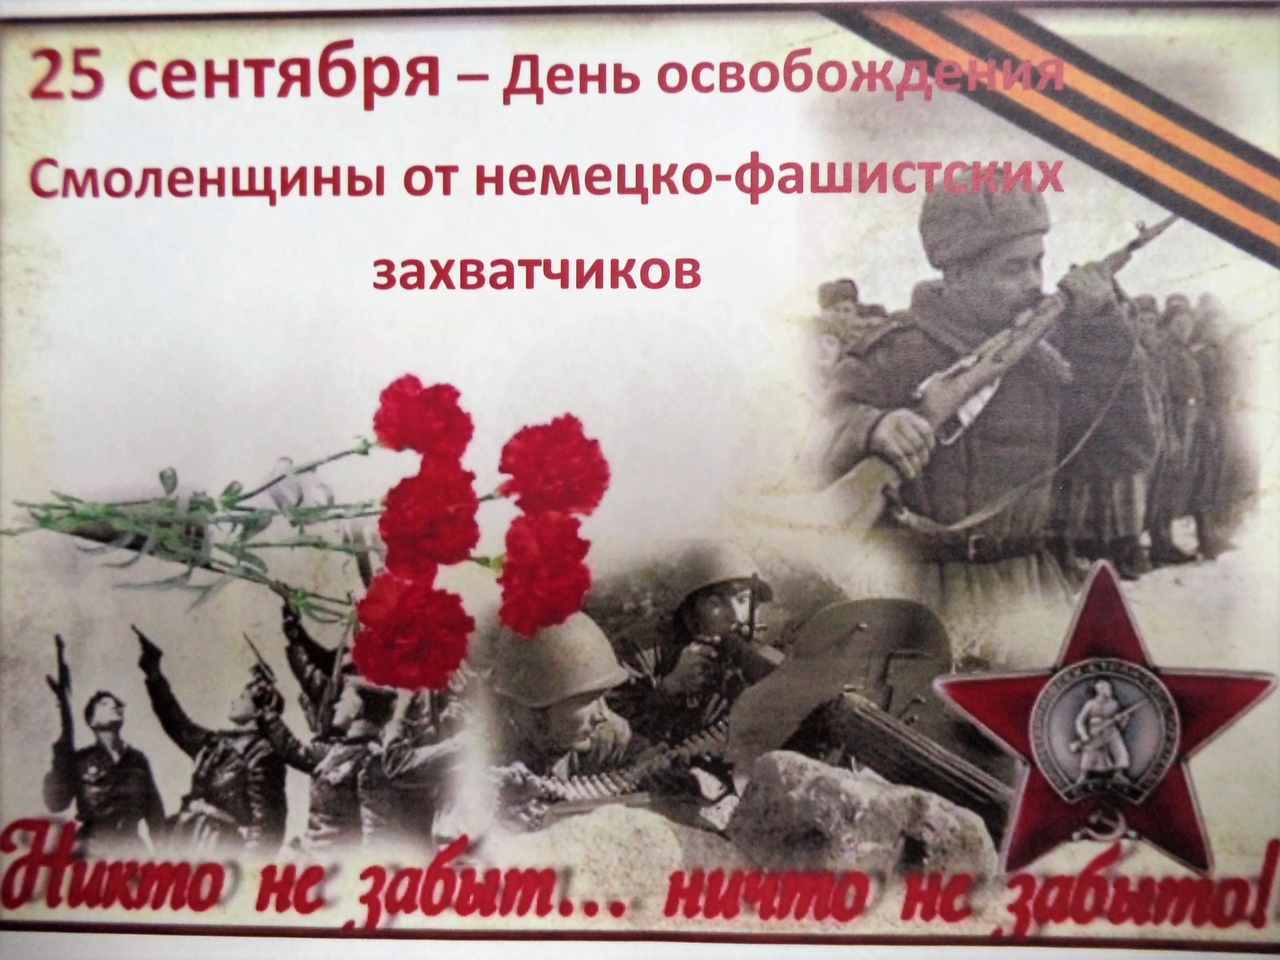 Сценарий от немецко фашистских захватчиков. День освобождения Смоленска 25 сентября. Освобождение Смоленщины в 1943 году. День освобождения Смоленщины от немецко-фашистских захватчиков. Освобождение Смоленщины от немецко фашистских захватчиков.